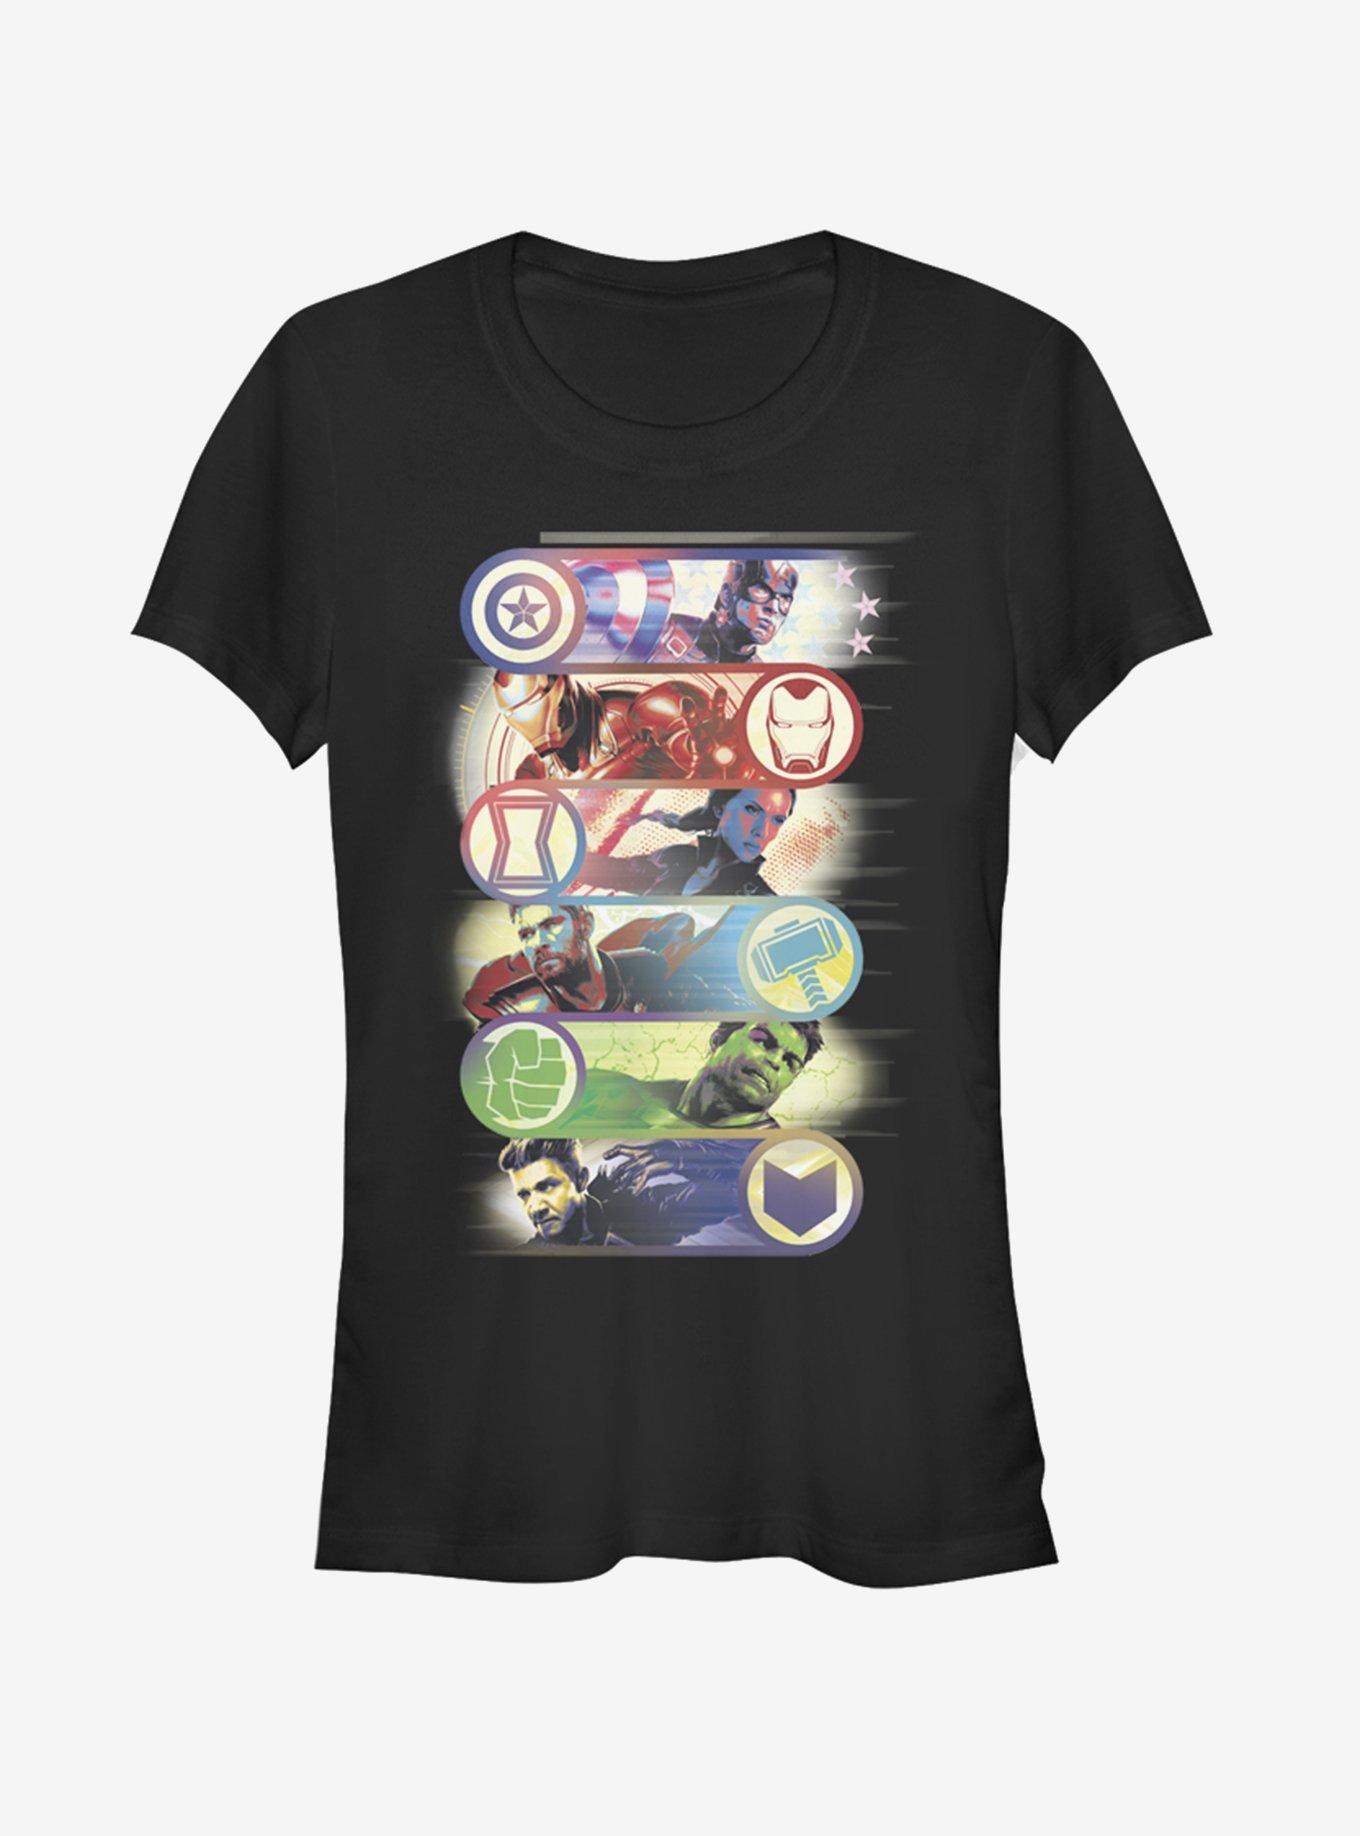 Marvel Avengers: Endgame Avengers Group Badge Girls T-Shirt